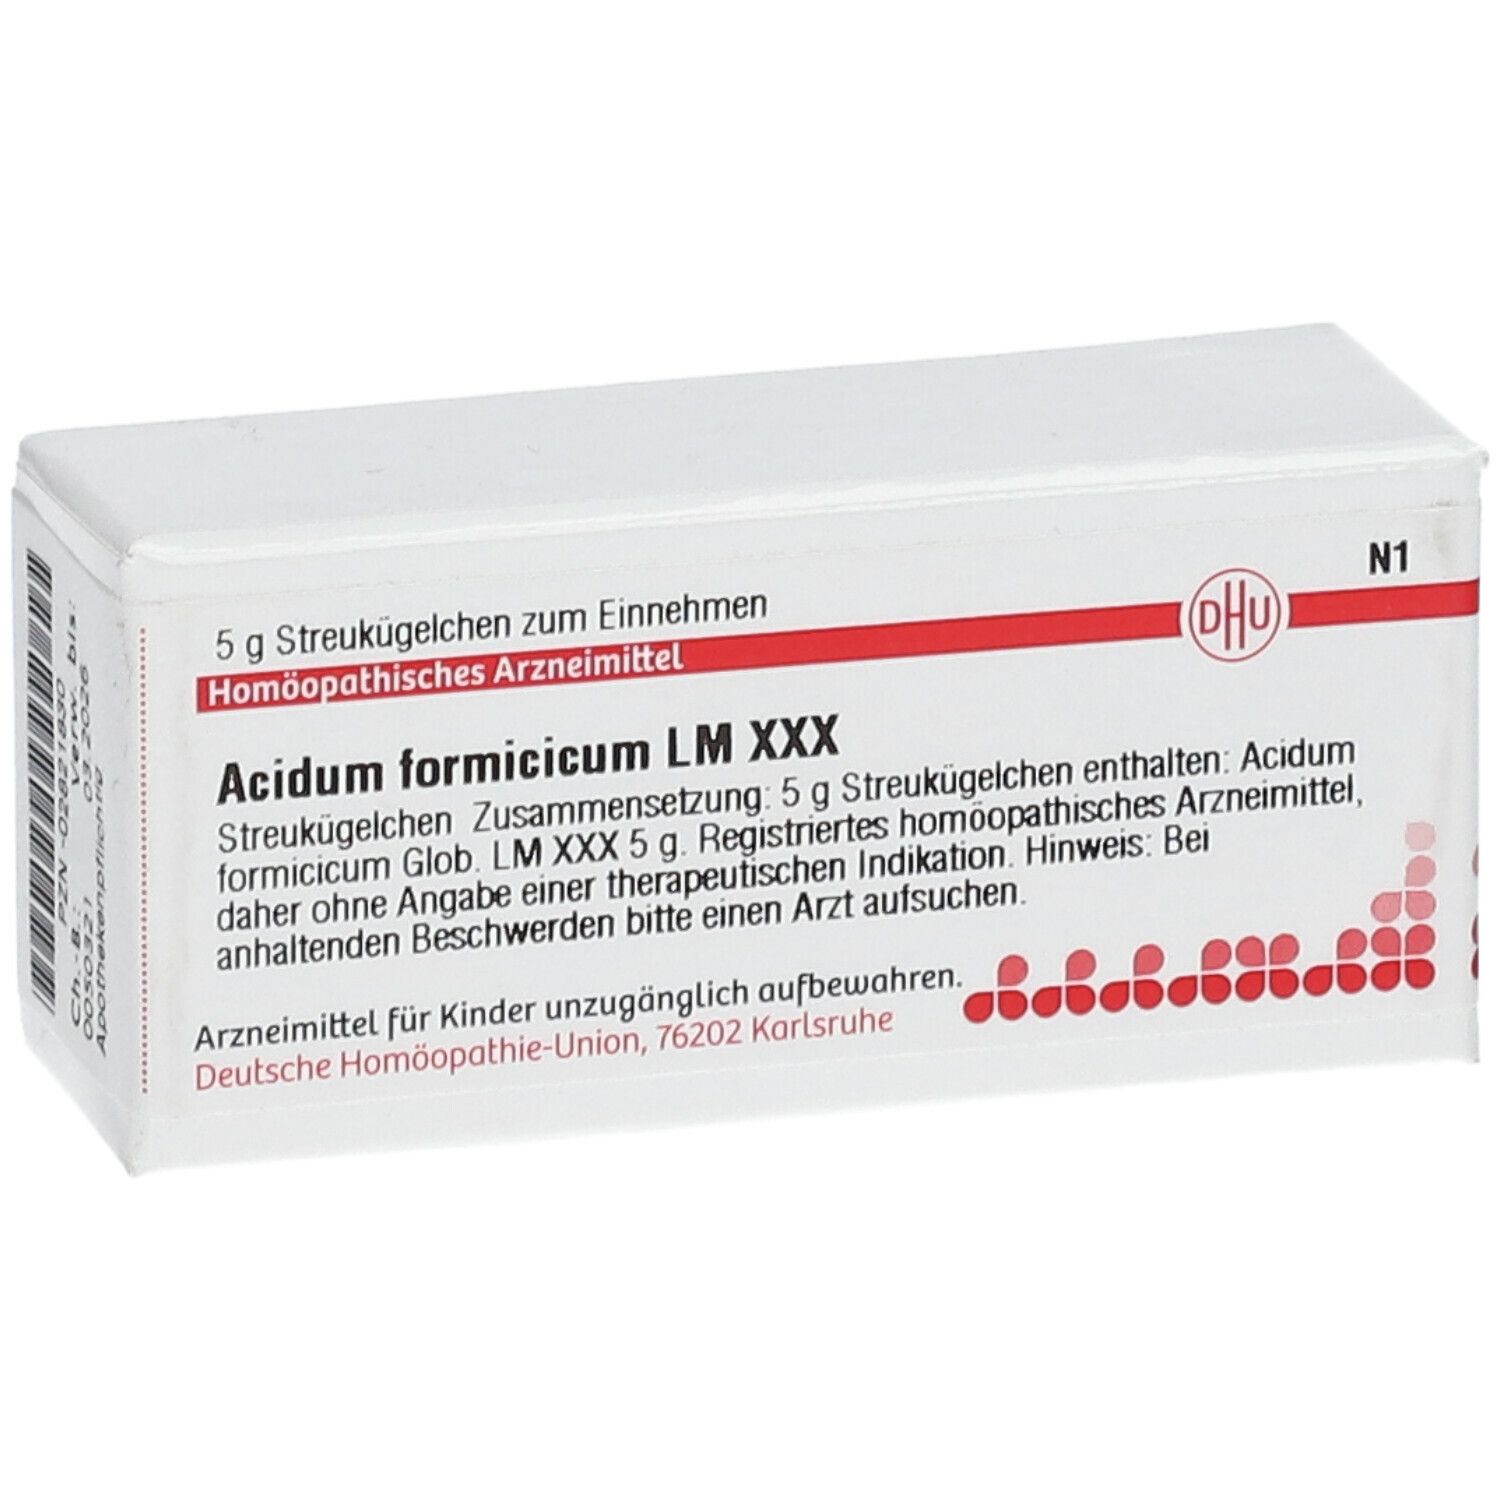 DHU Acidum Formicicum LM XXX